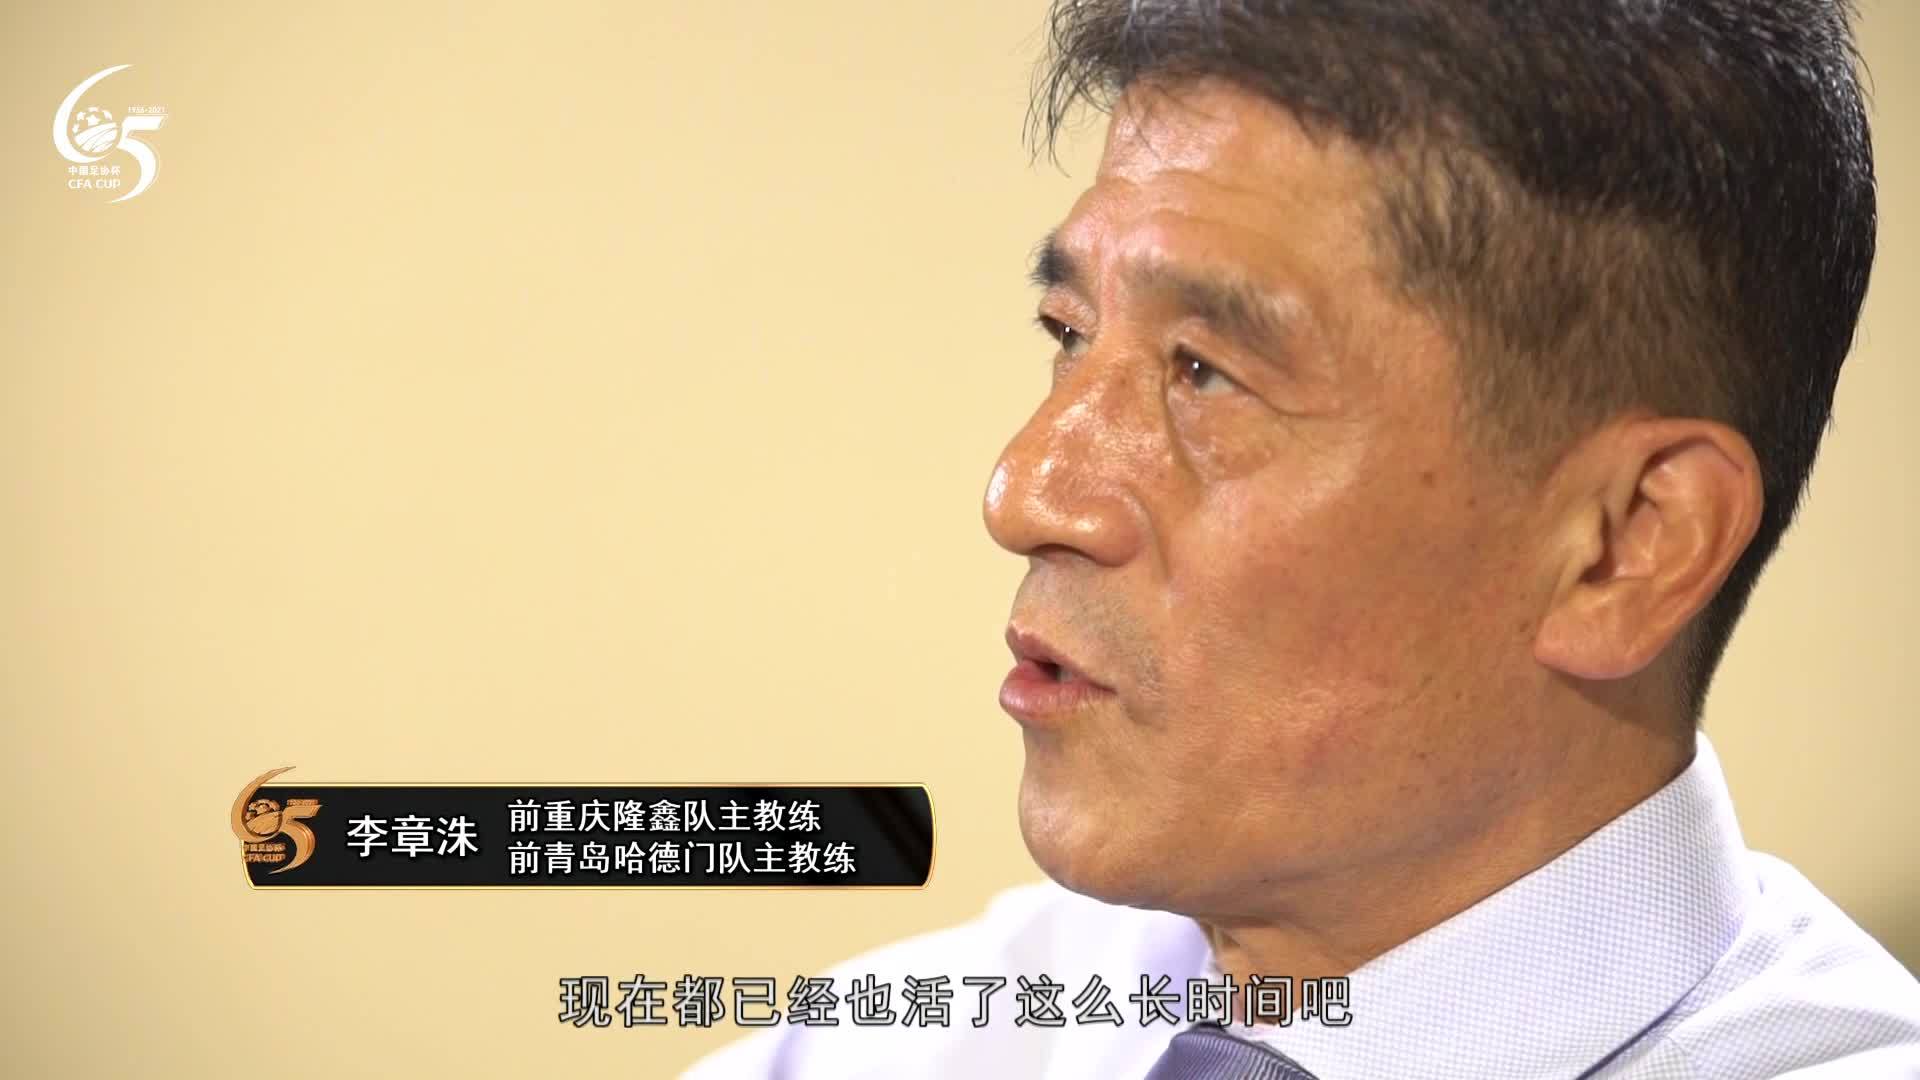 65岁的李章洙遇见了65岁的足协杯